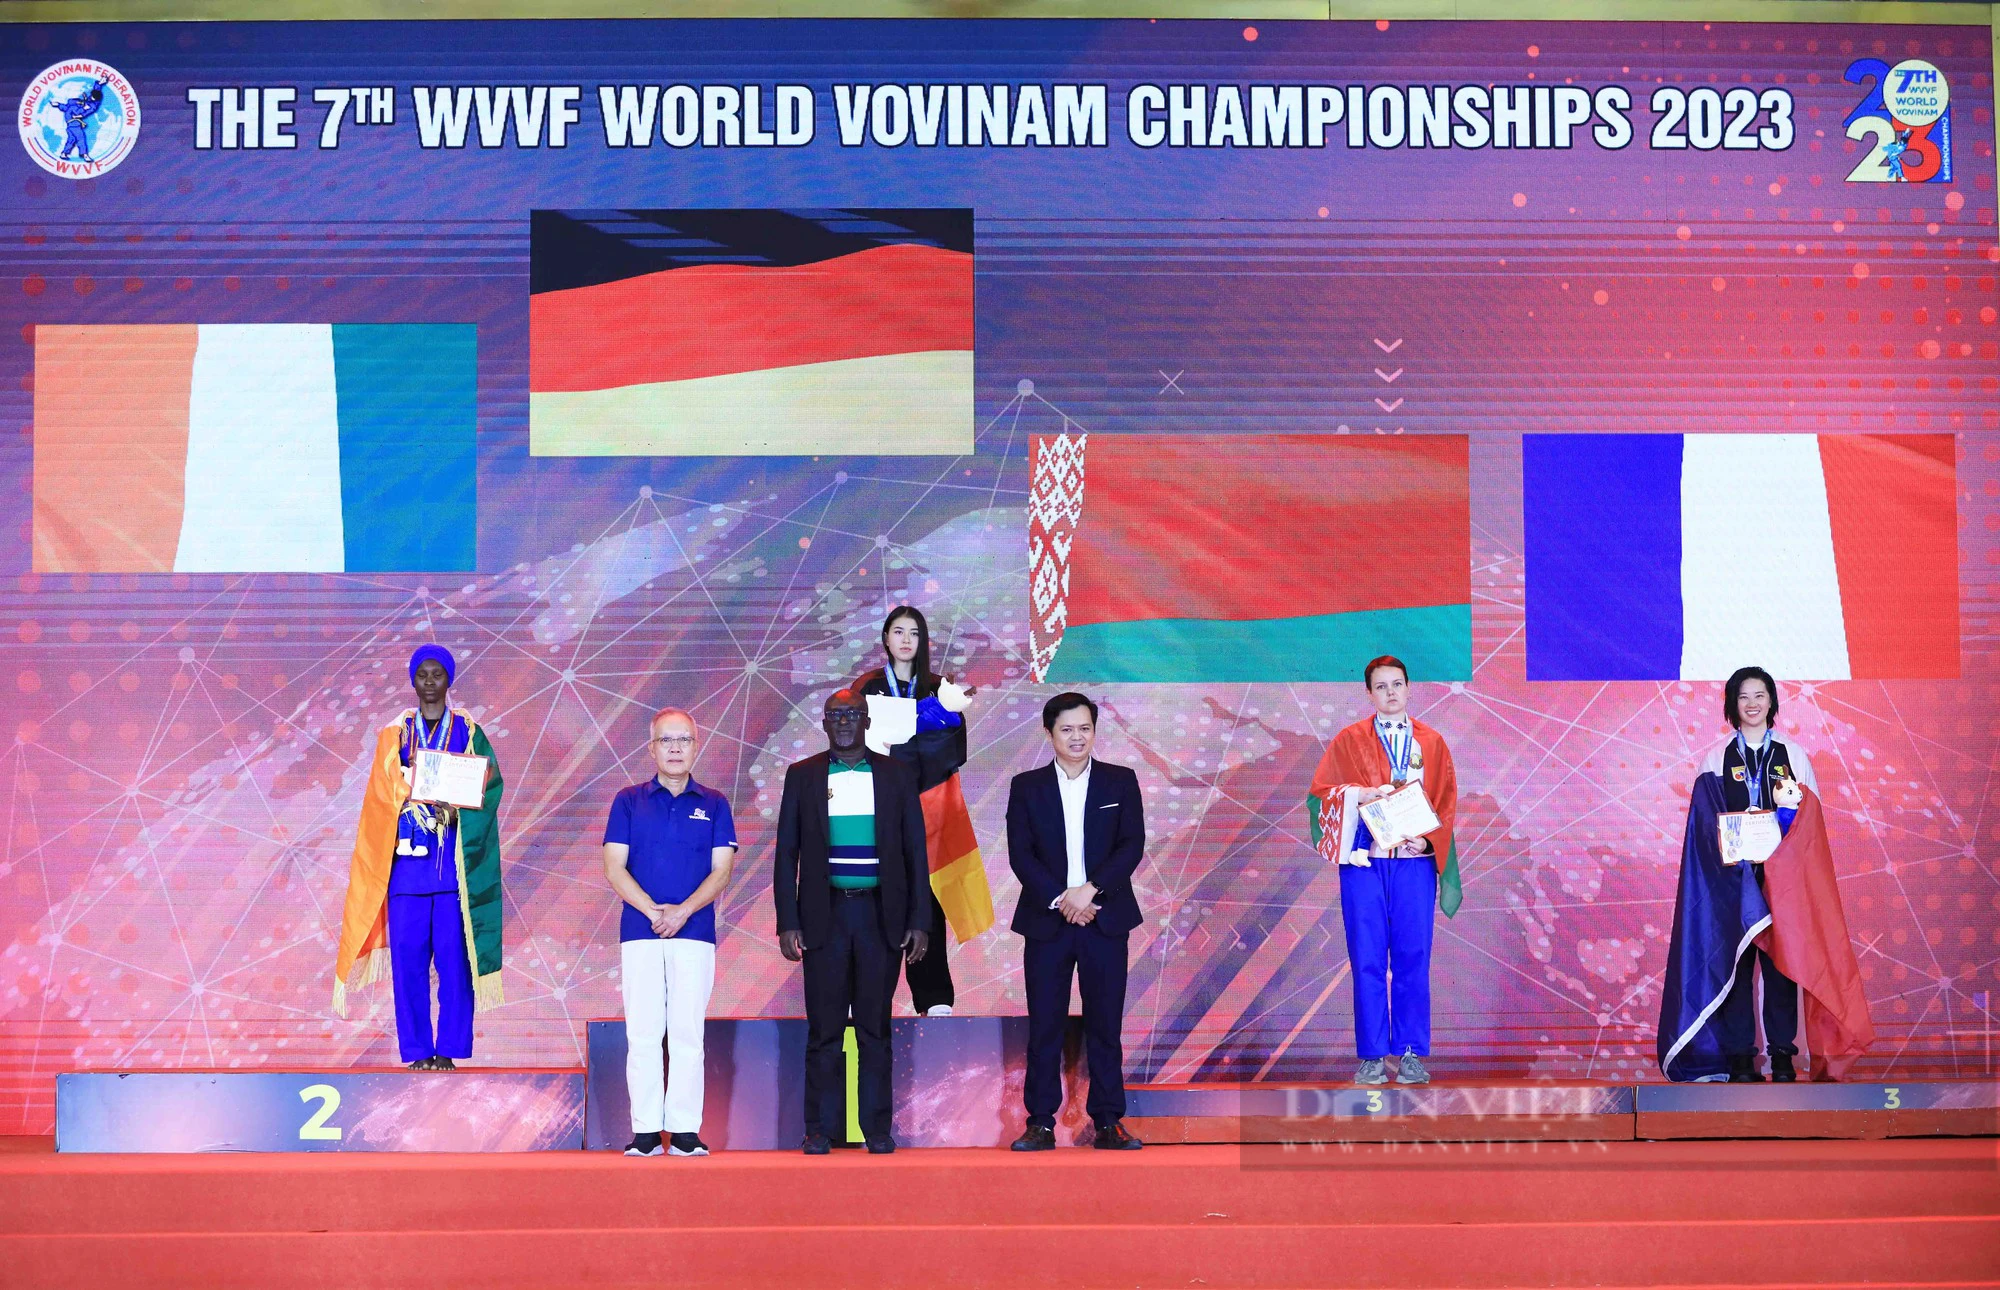 Lên ngôi vô địch Vovinam thế giới, hotgirl Đức đốn tim khán giả với nhan sắc cực phẩm - Ảnh 9.